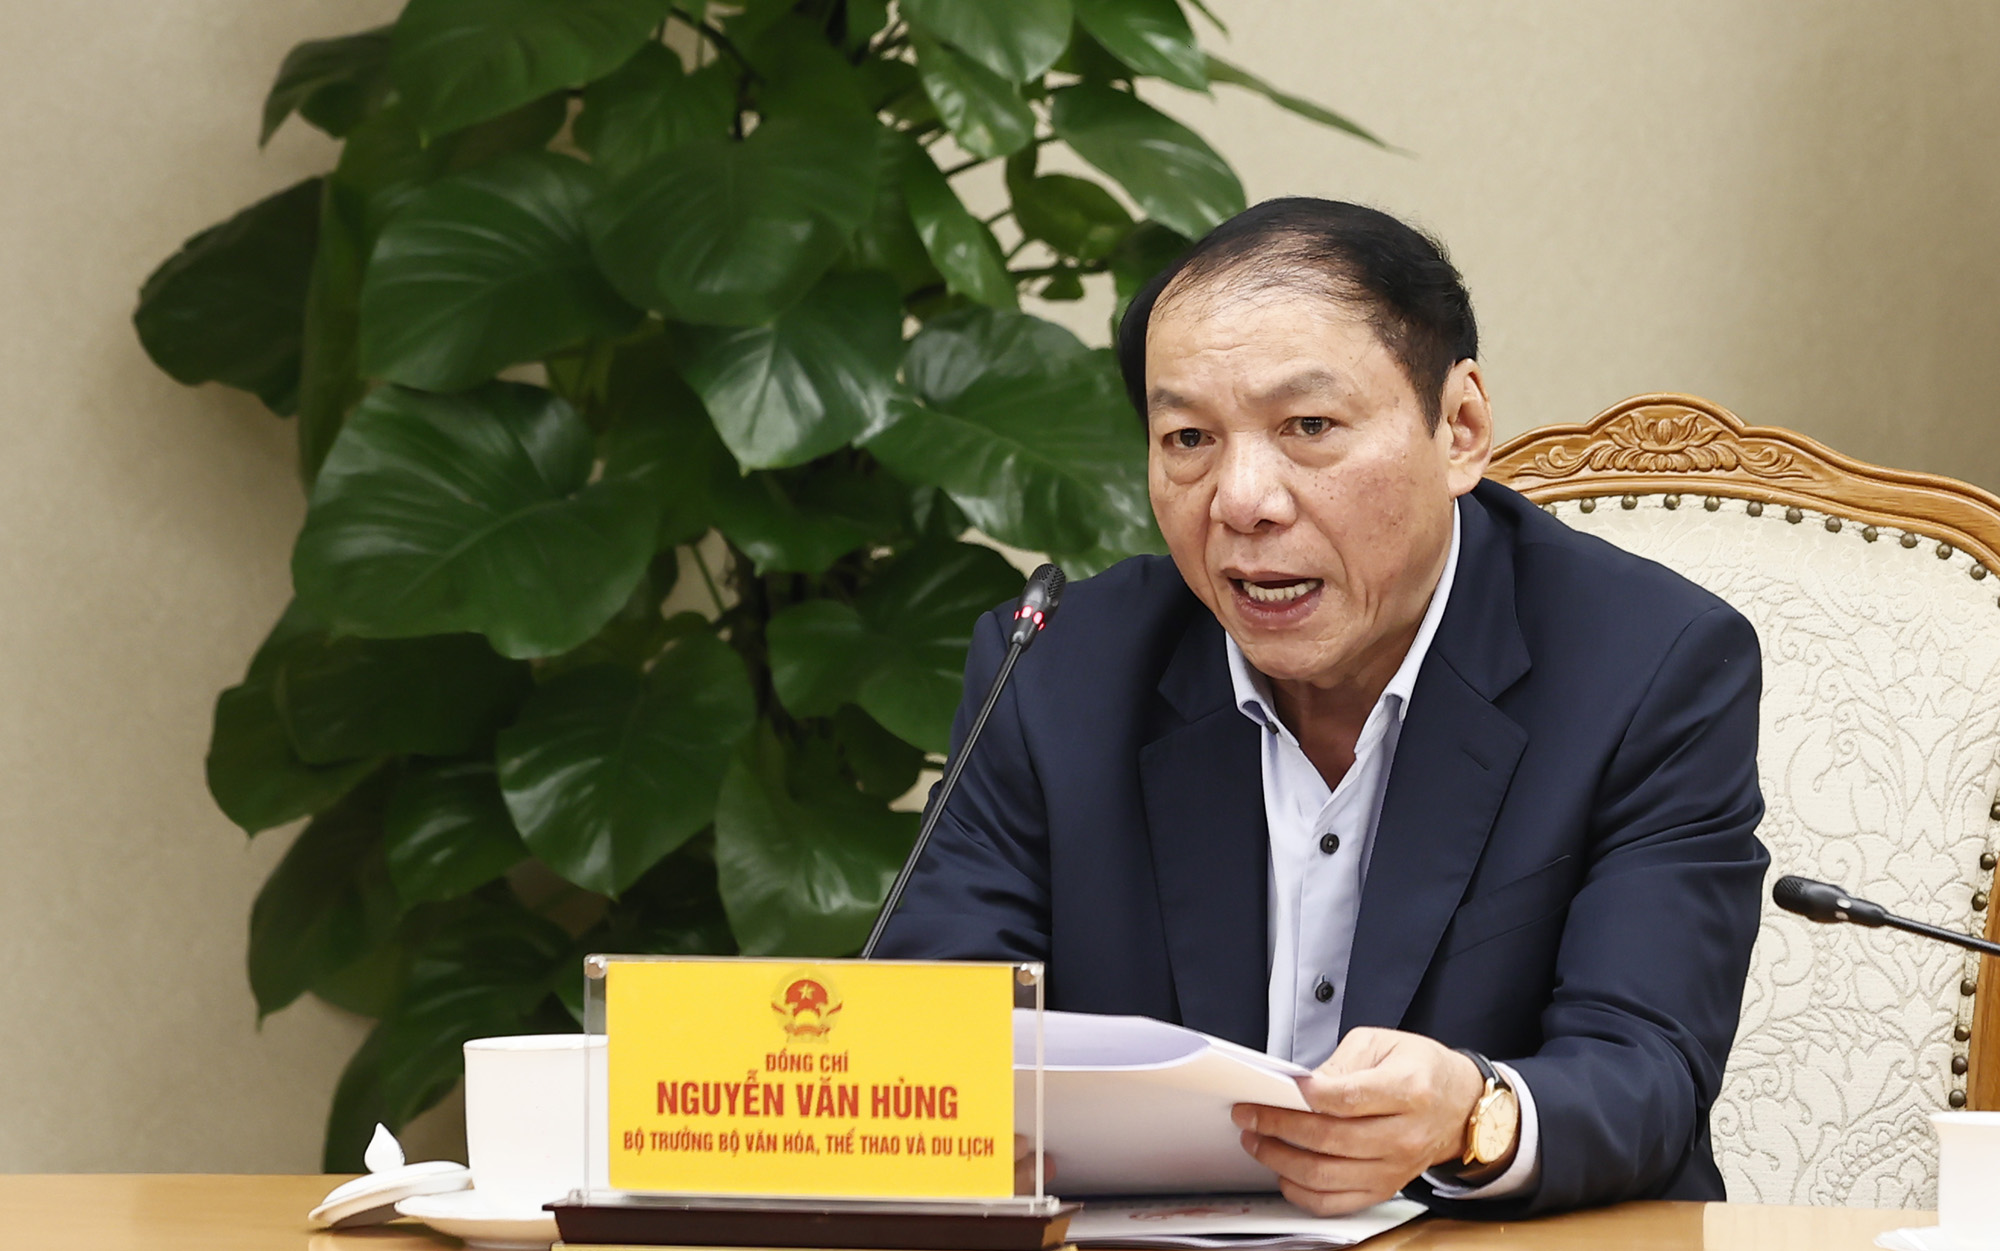 Bộ trưởng Bộ VHTTDL Nguyễn Văn Hùng phát biểu tại cuộc họp.